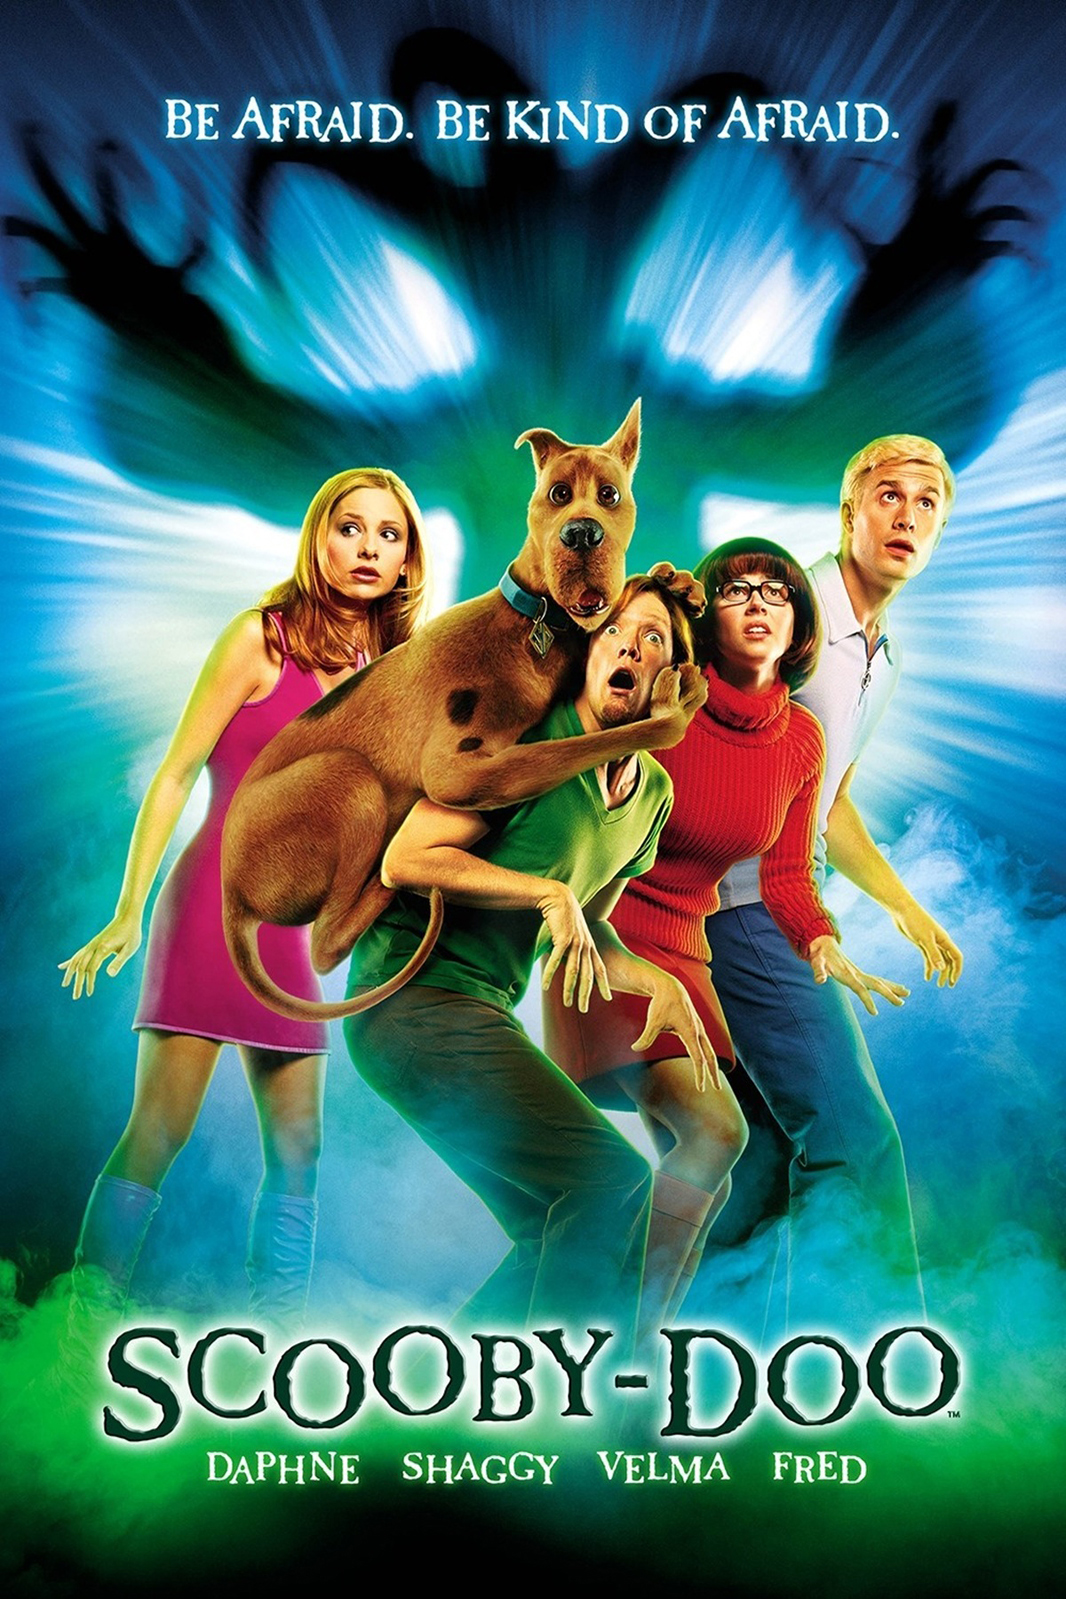 Scooby-Doo Movie Times | Showbiz Kingwood